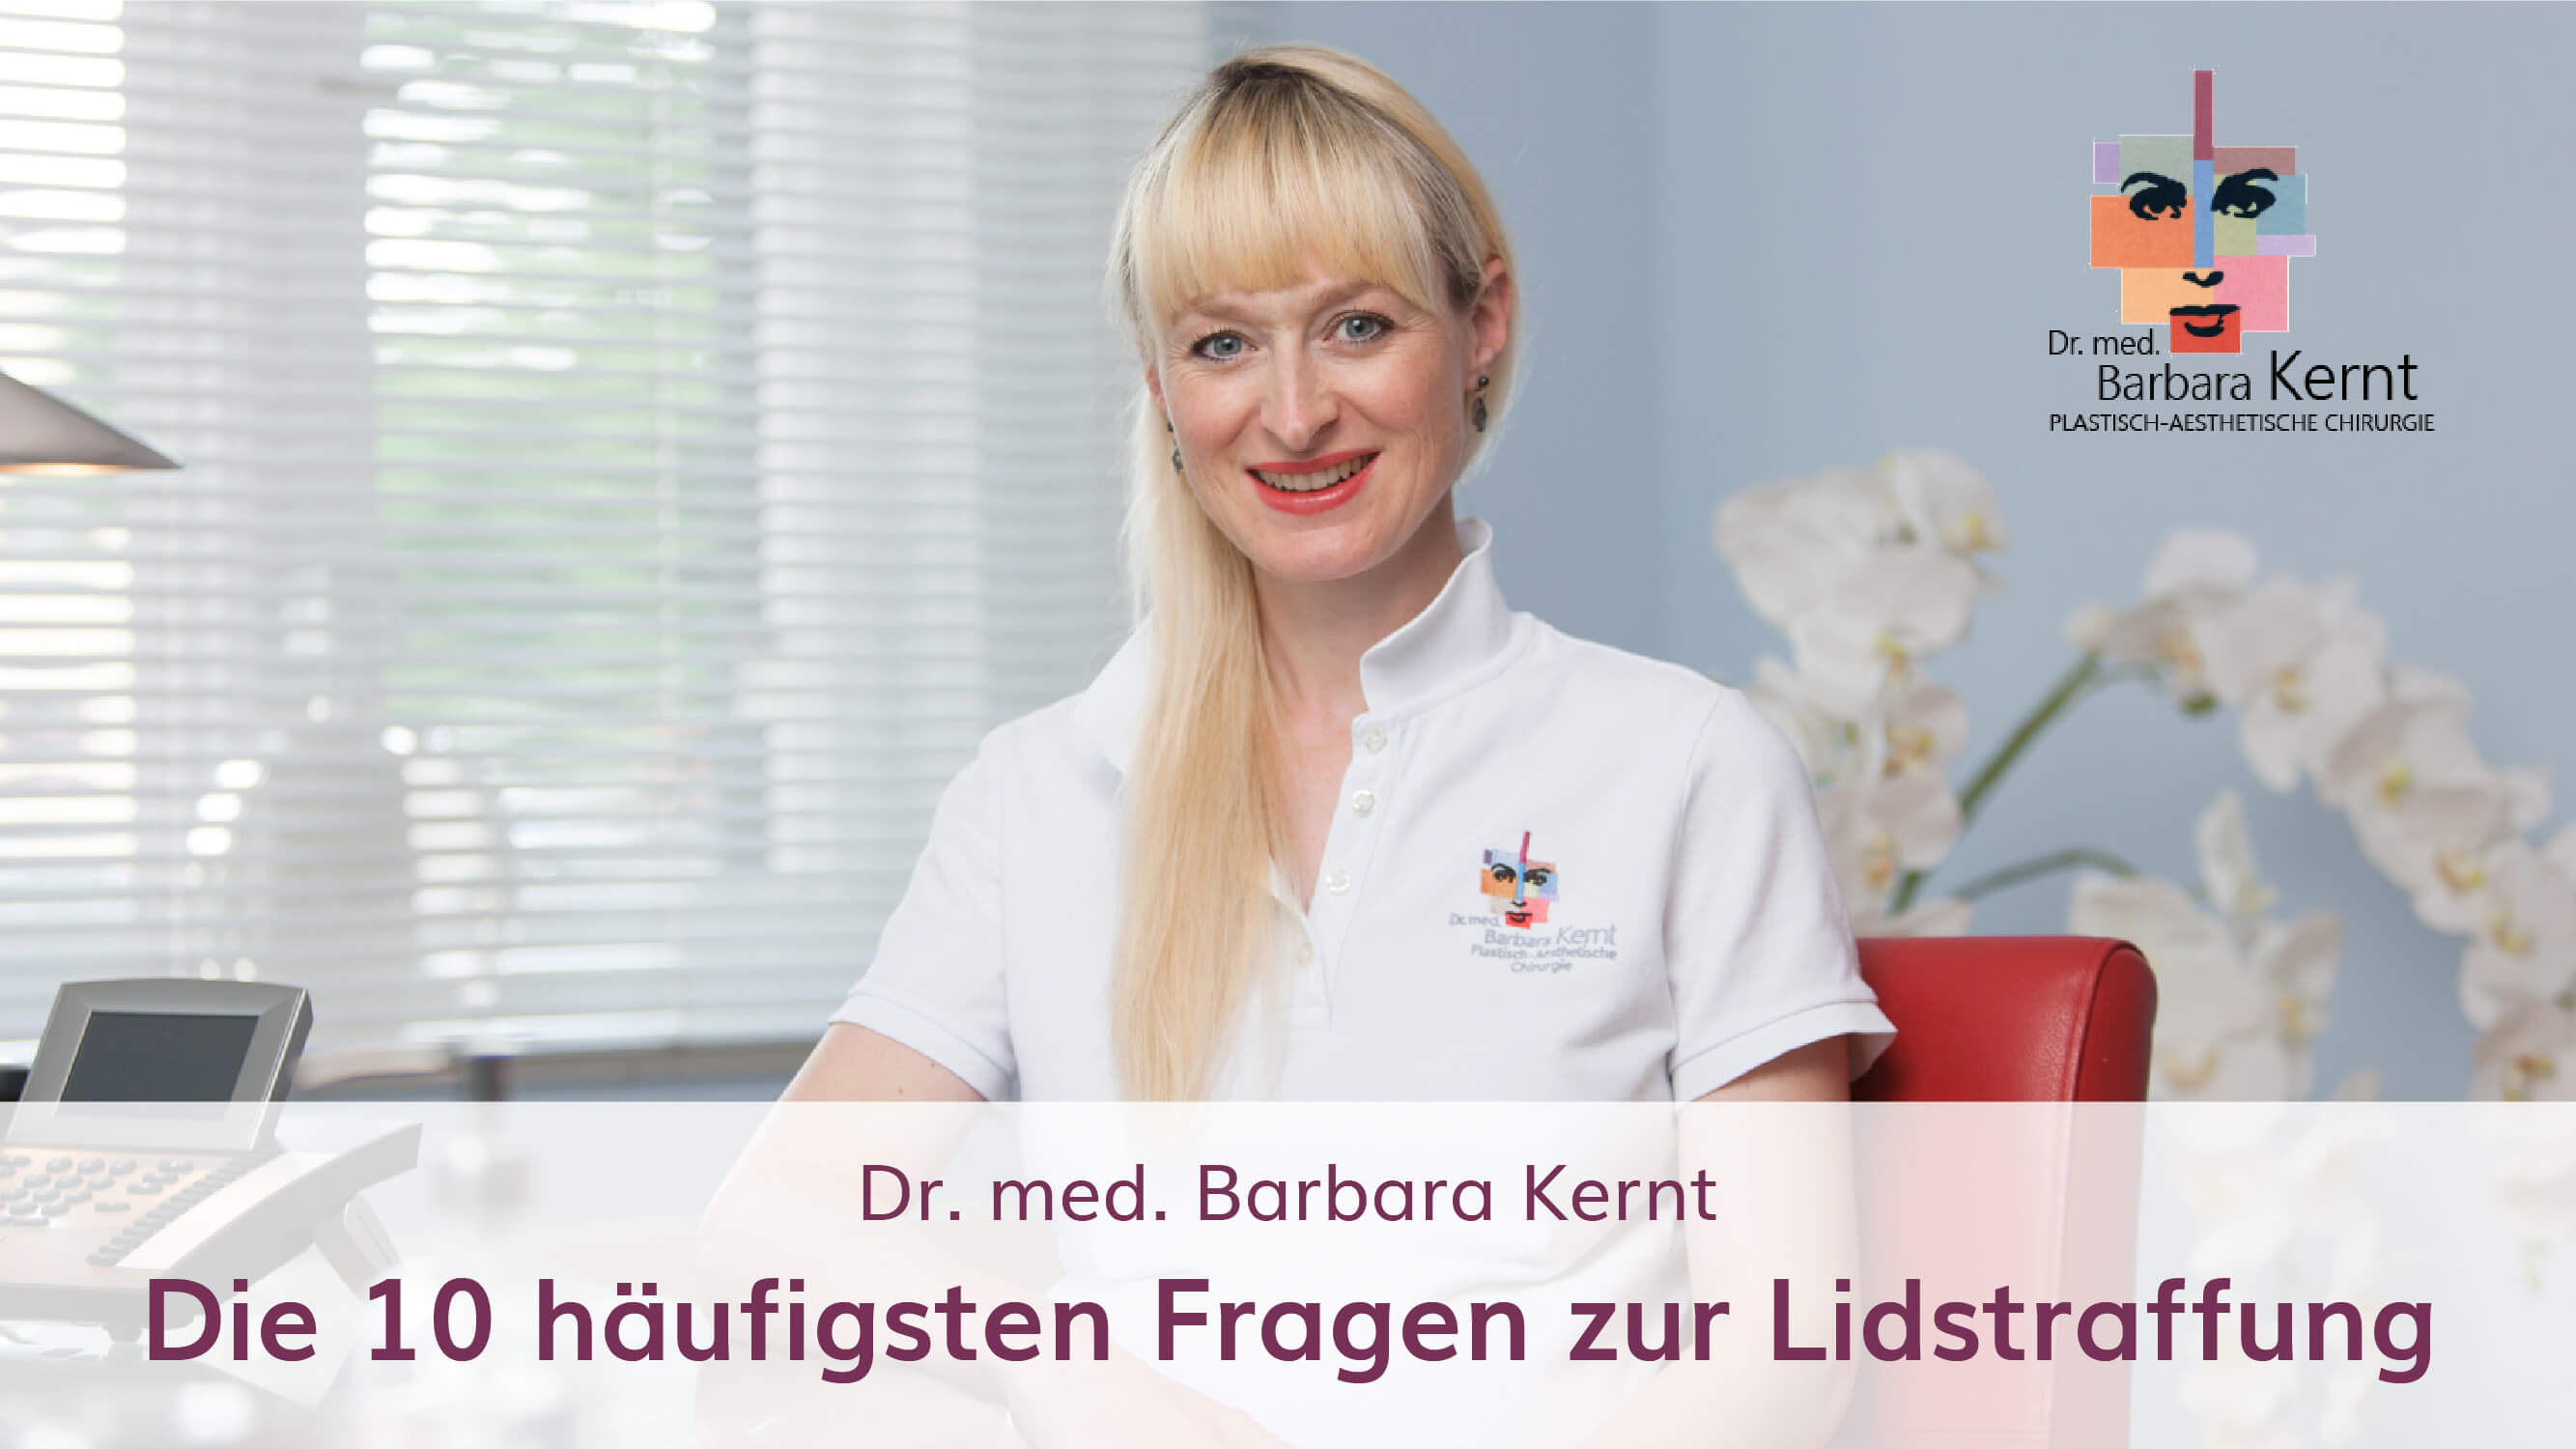 lidstraffung münchen dr. barbara kernt plastische chirurgie